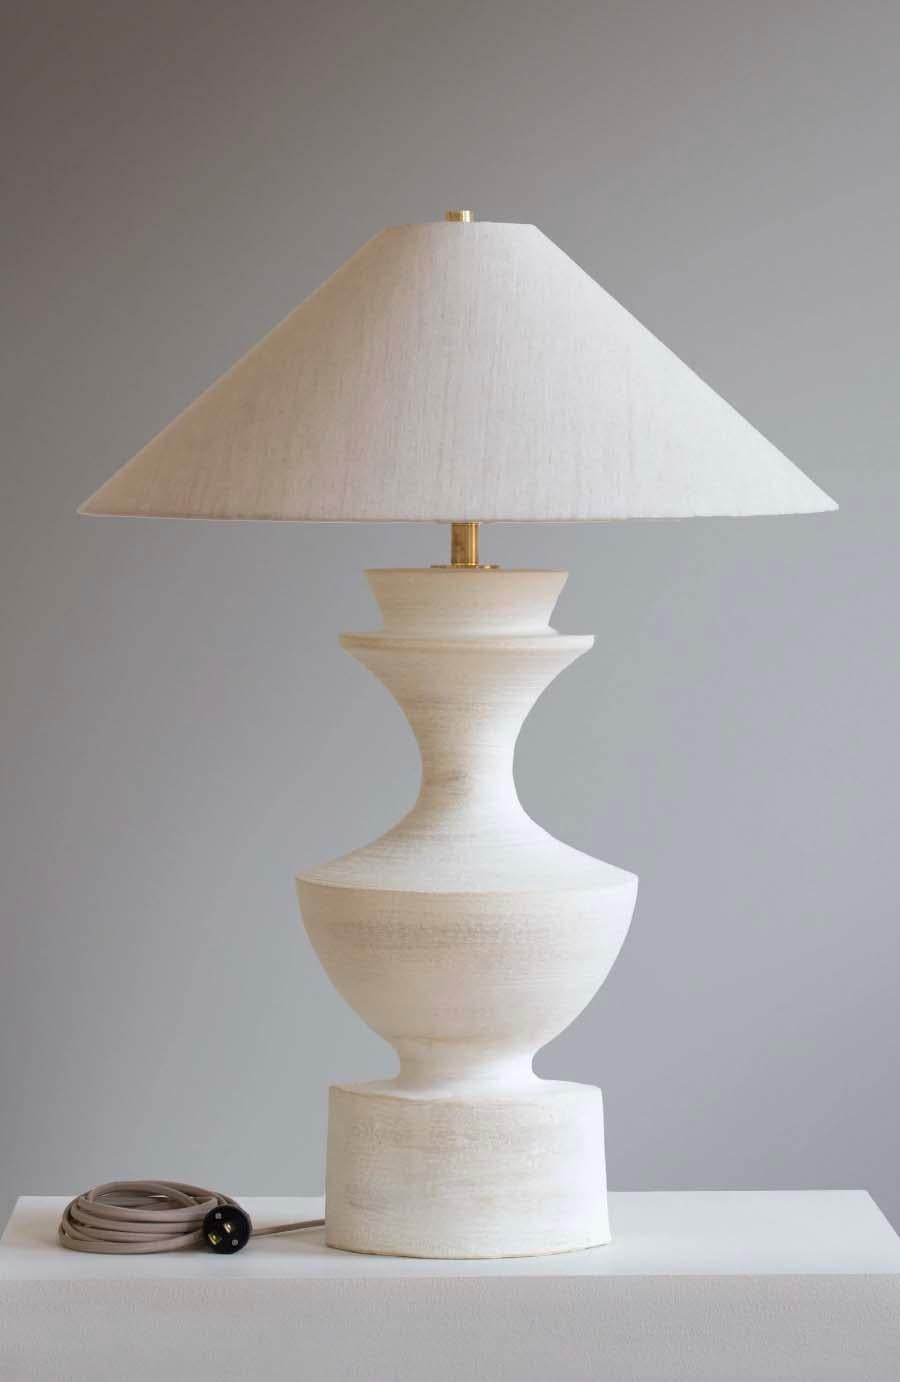 La lampe Sophia est une poterie de studio faite à la main par l'artiste céramiste Danny Kaplan. Abat-jour inclus. Veuillez noter que les dimensions exactes peuvent varier.

Né à New York et élevé à Aix-en-Provence, en France, la passion de Danny